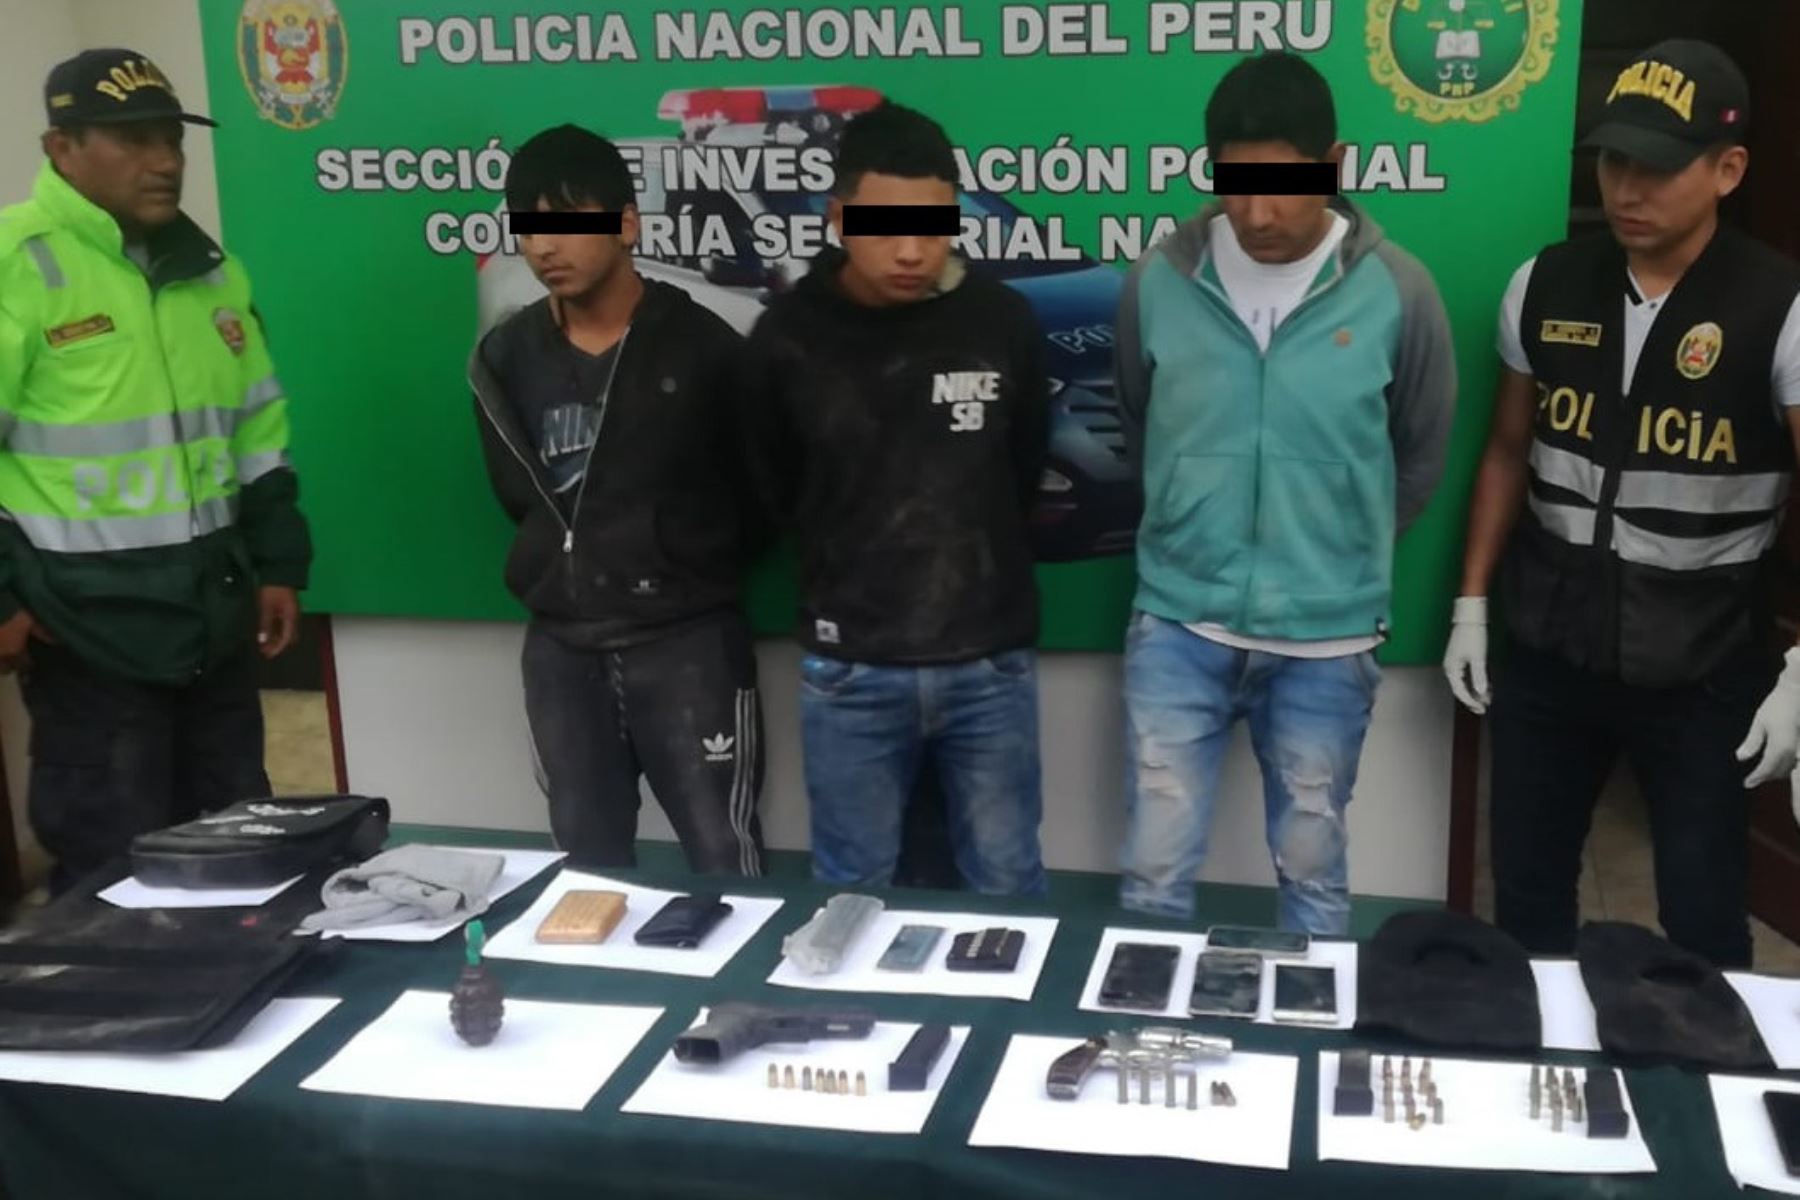 La Policía Nacional del Perú (PNP) capturó en la región Ica a tres sujetos sindicados como presuntos integrantes de la organización criminal “Los injertos de Nasca”, a quienes se les incautó una granada de guerra y armas que intentaron abandonar en su huida.